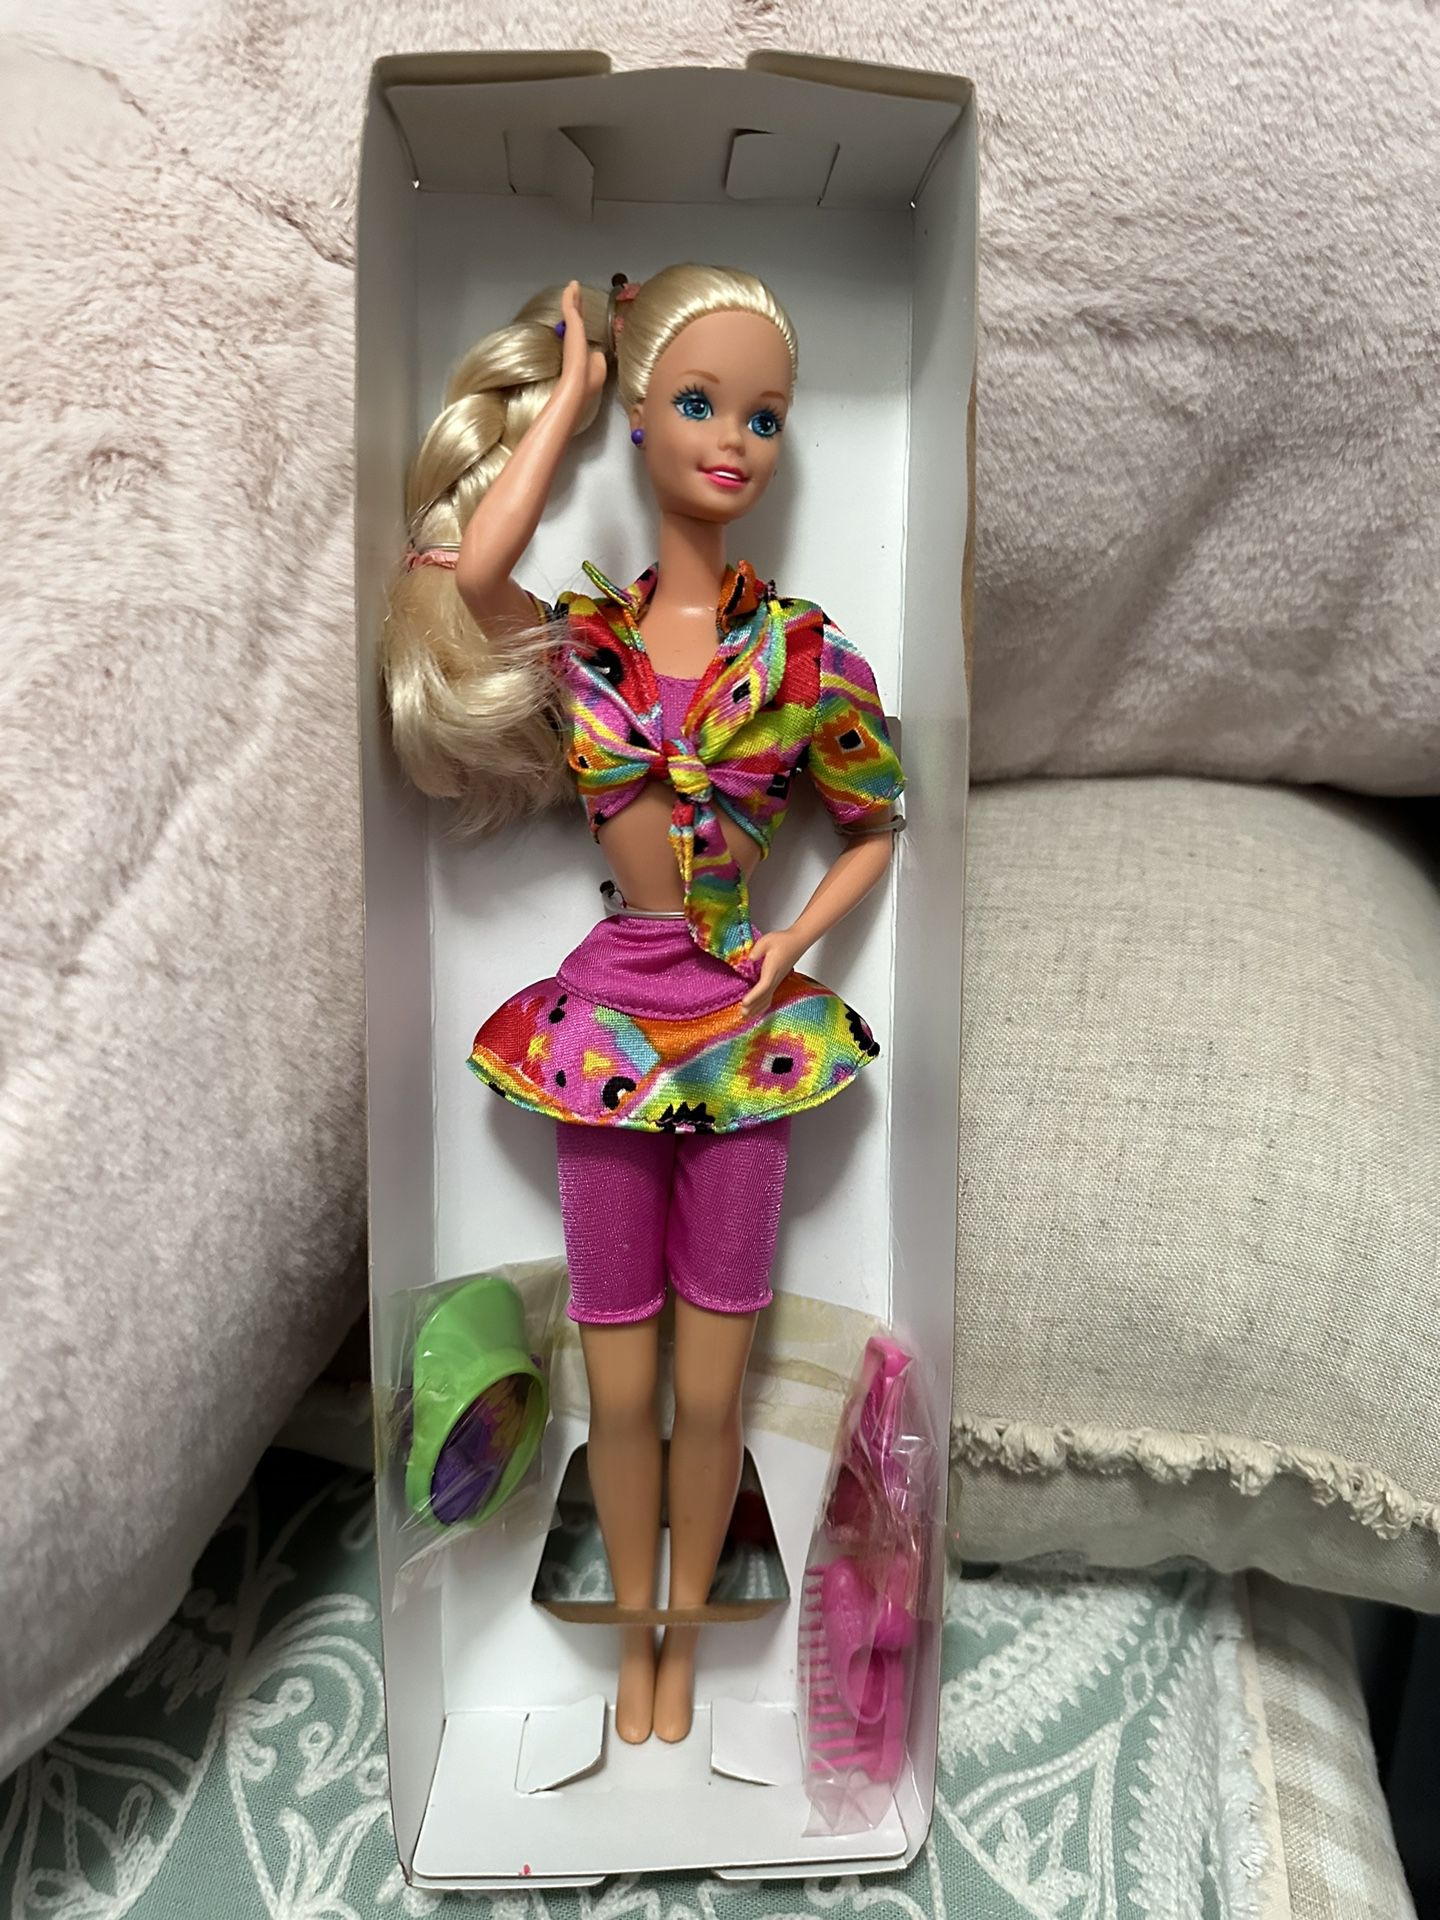 Barbie Wacky Warehouse Koolaid Special Edition